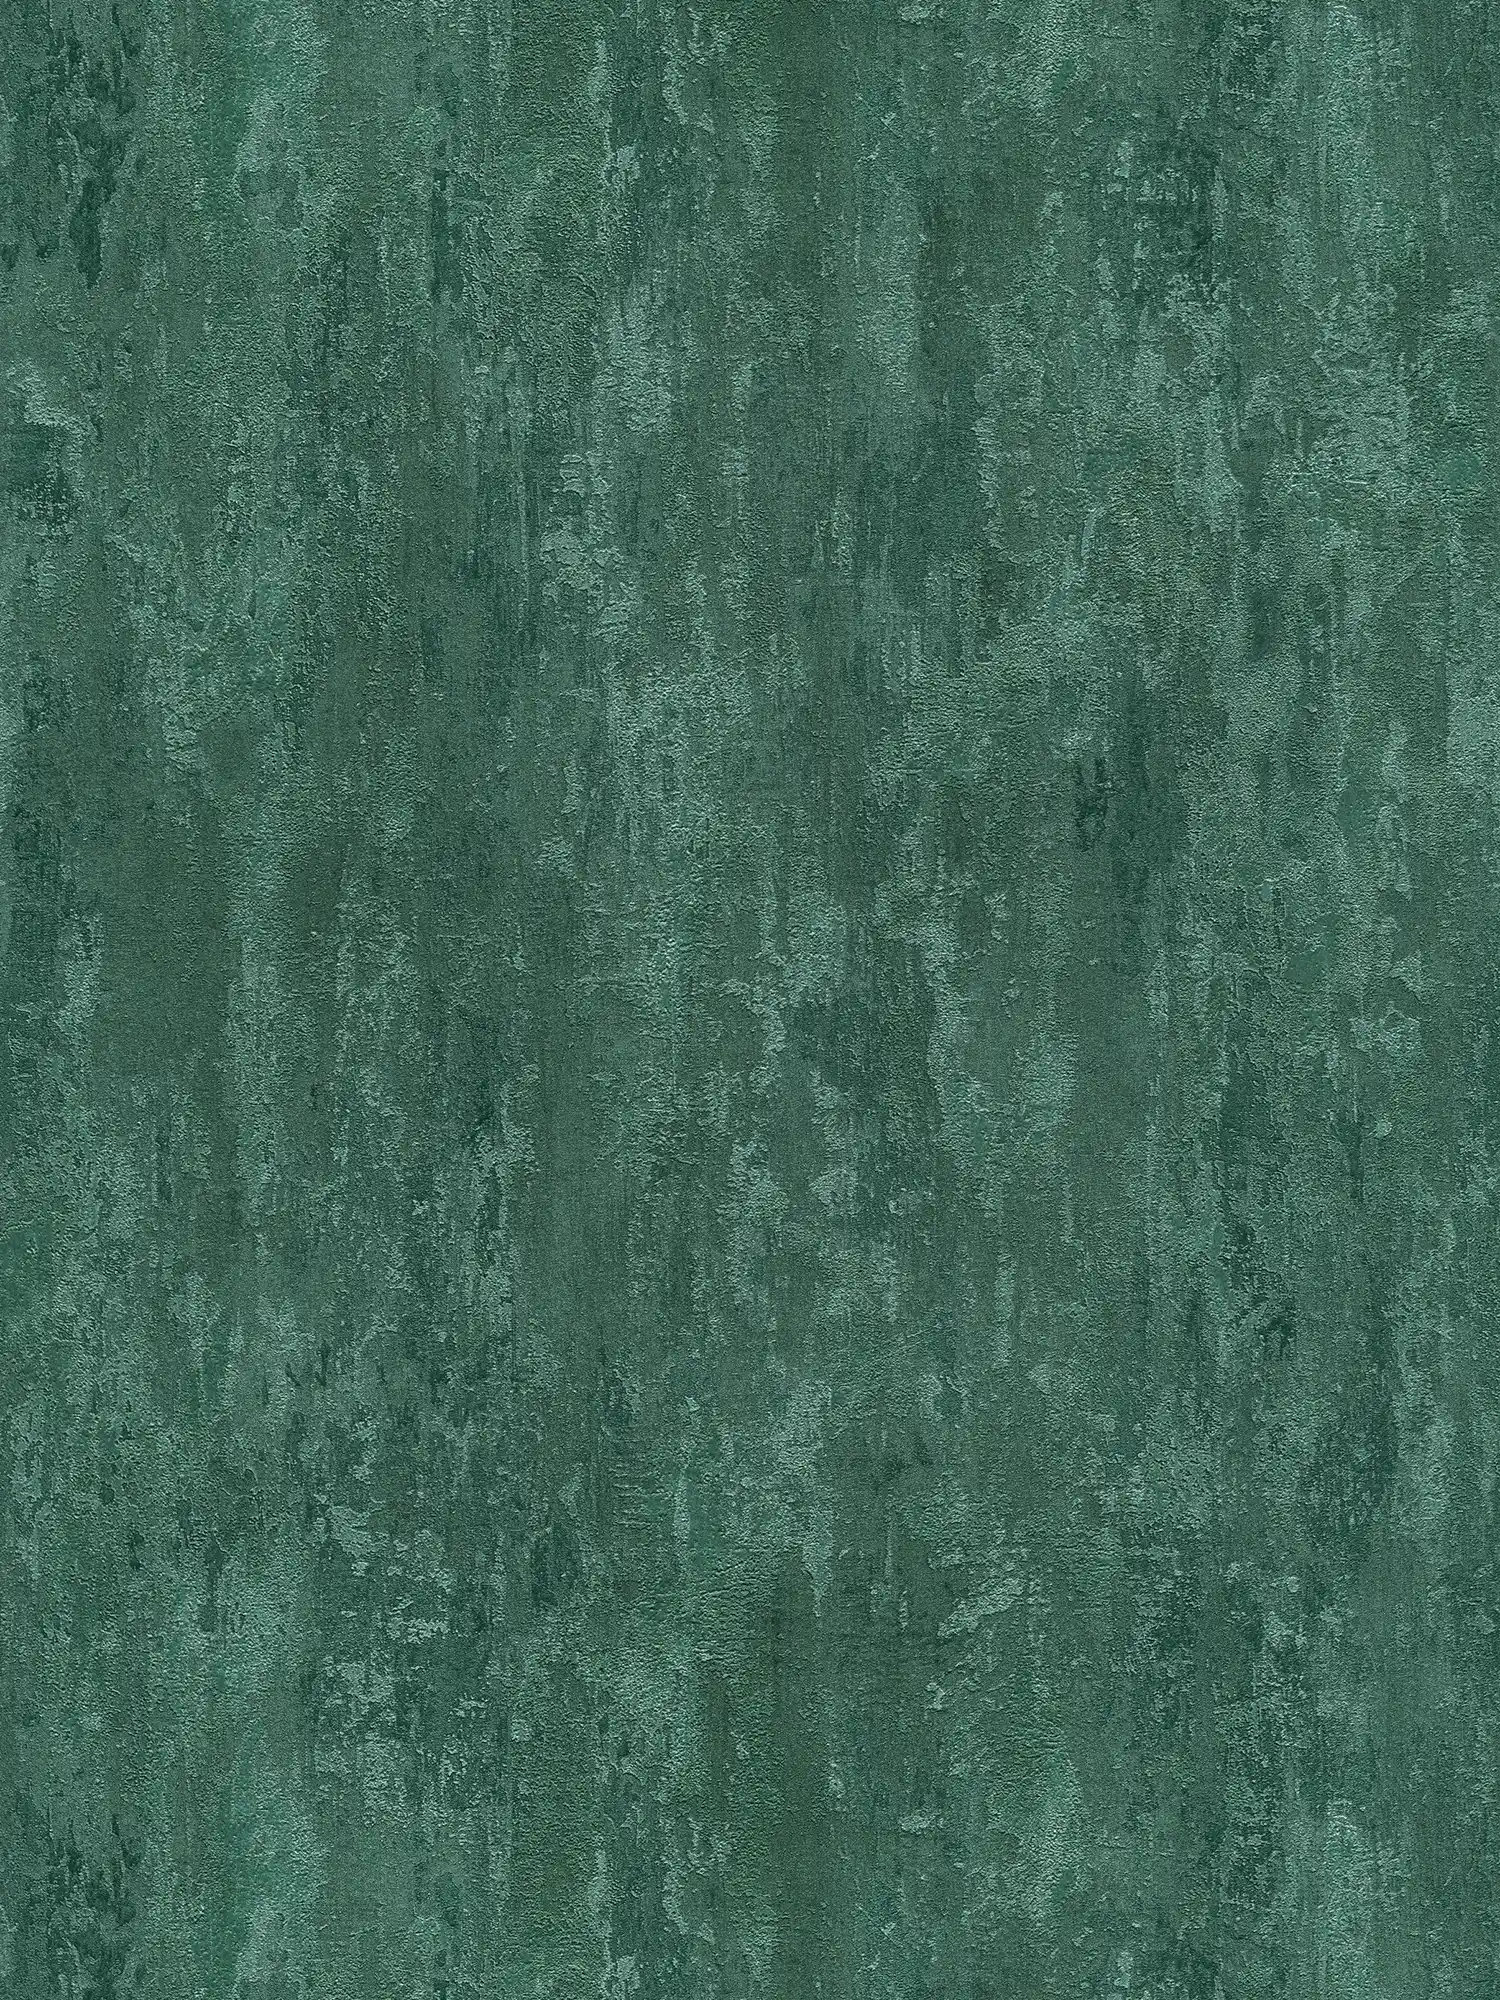 papel pintado estilo industrial con efecto de textura - verde, metálico
